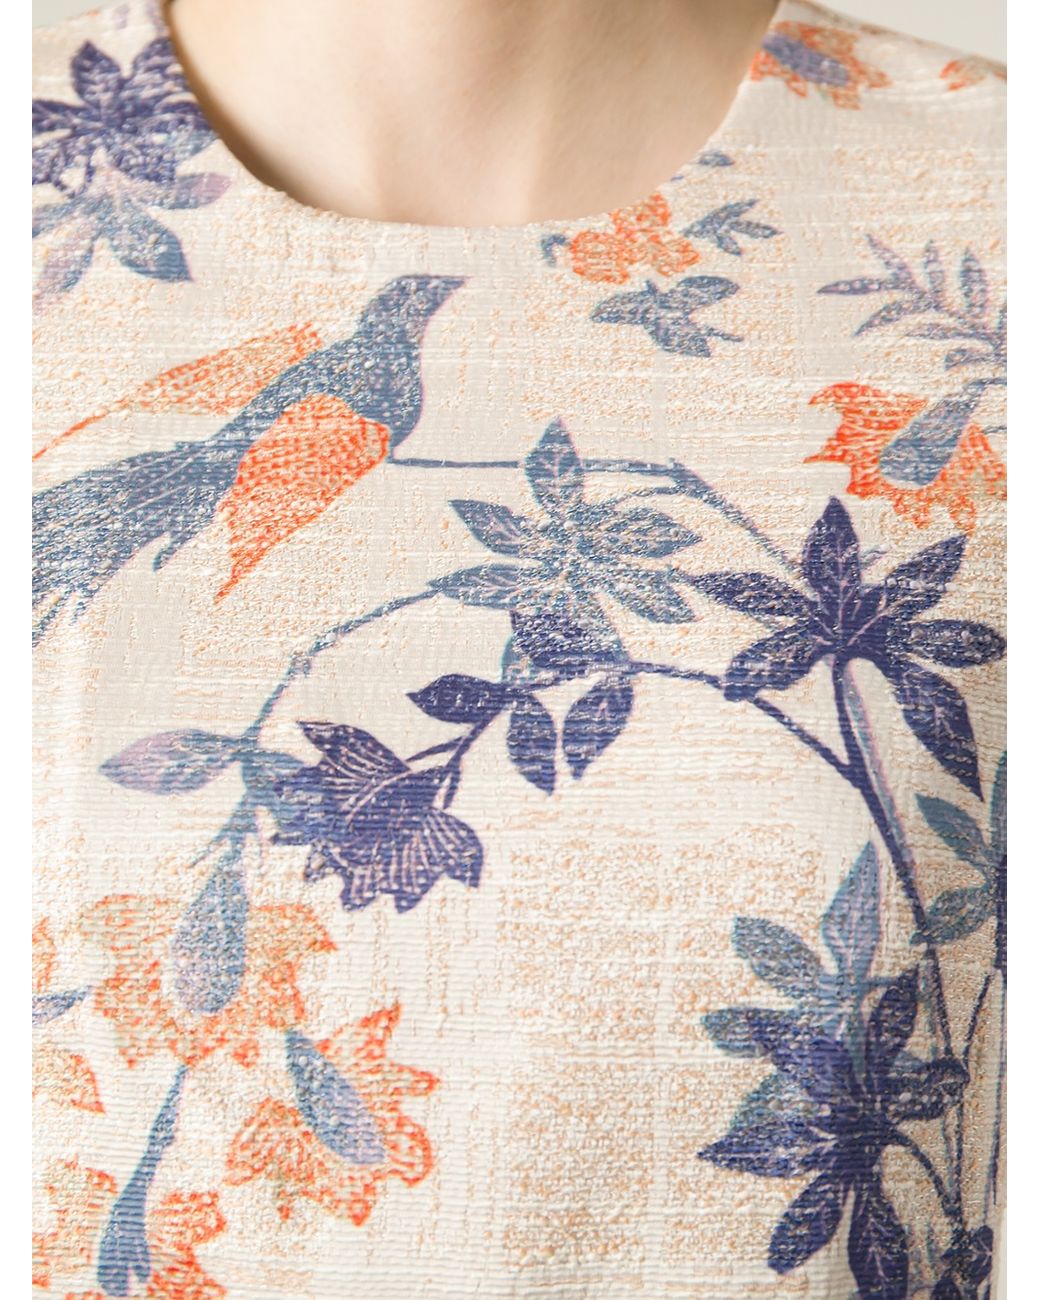 Tory Burch Flower Bird Print Dress in Natural | Lyst